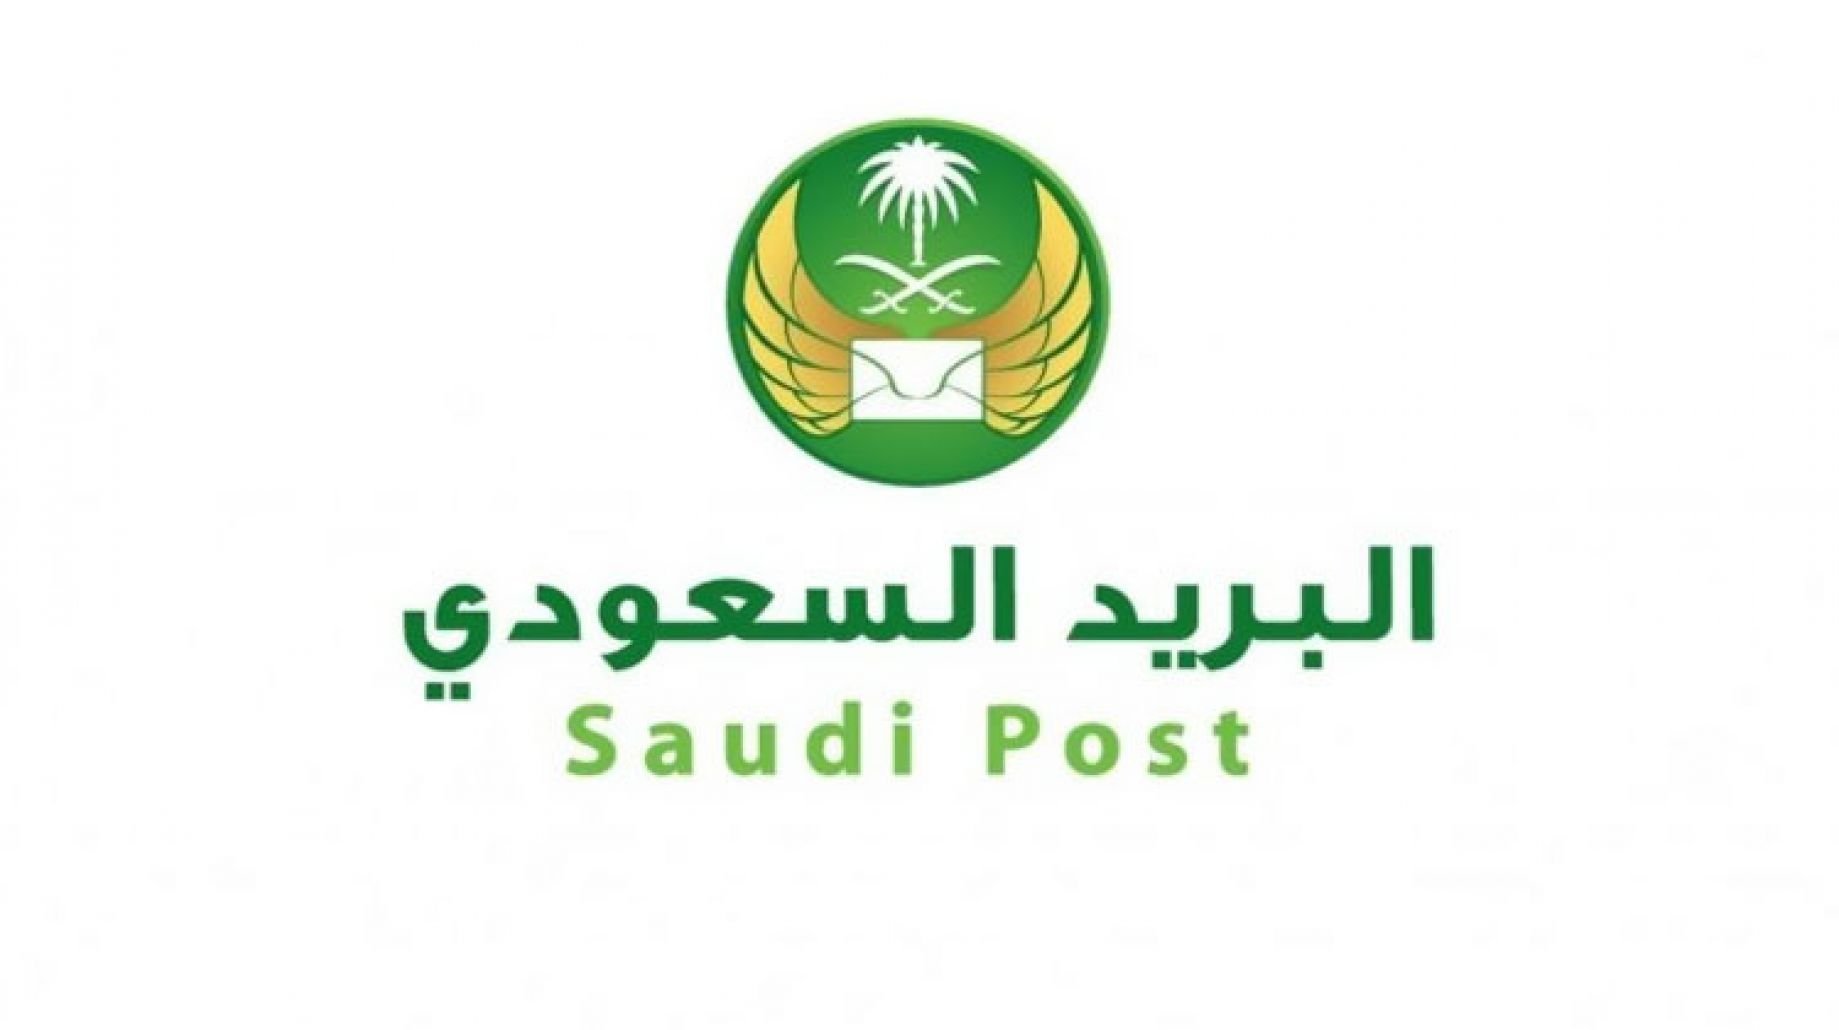 كيفية تغيير رقم الجوال في البريد السعودي إلكترونيا